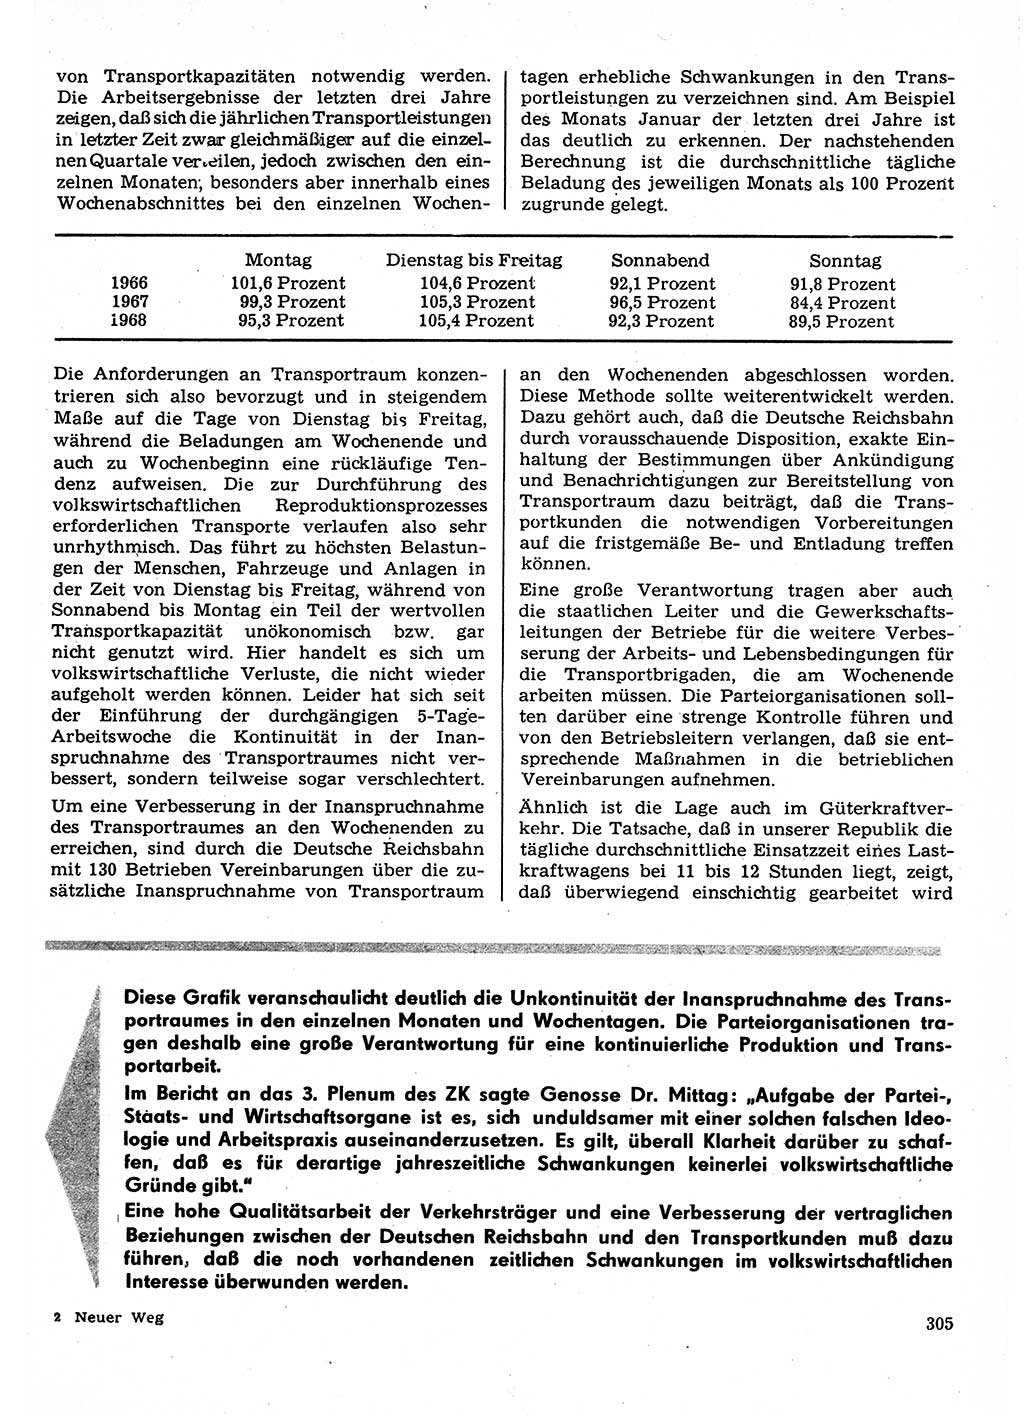 Neuer Weg (NW), Organ des Zentralkomitees (ZK) der SED (Sozialistische Einheitspartei Deutschlands) für Fragen des Parteilebens, 23. Jahrgang [Deutsche Demokratische Republik (DDR)] 1968, Seite 305 (NW ZK SED DDR 1968, S. 305)